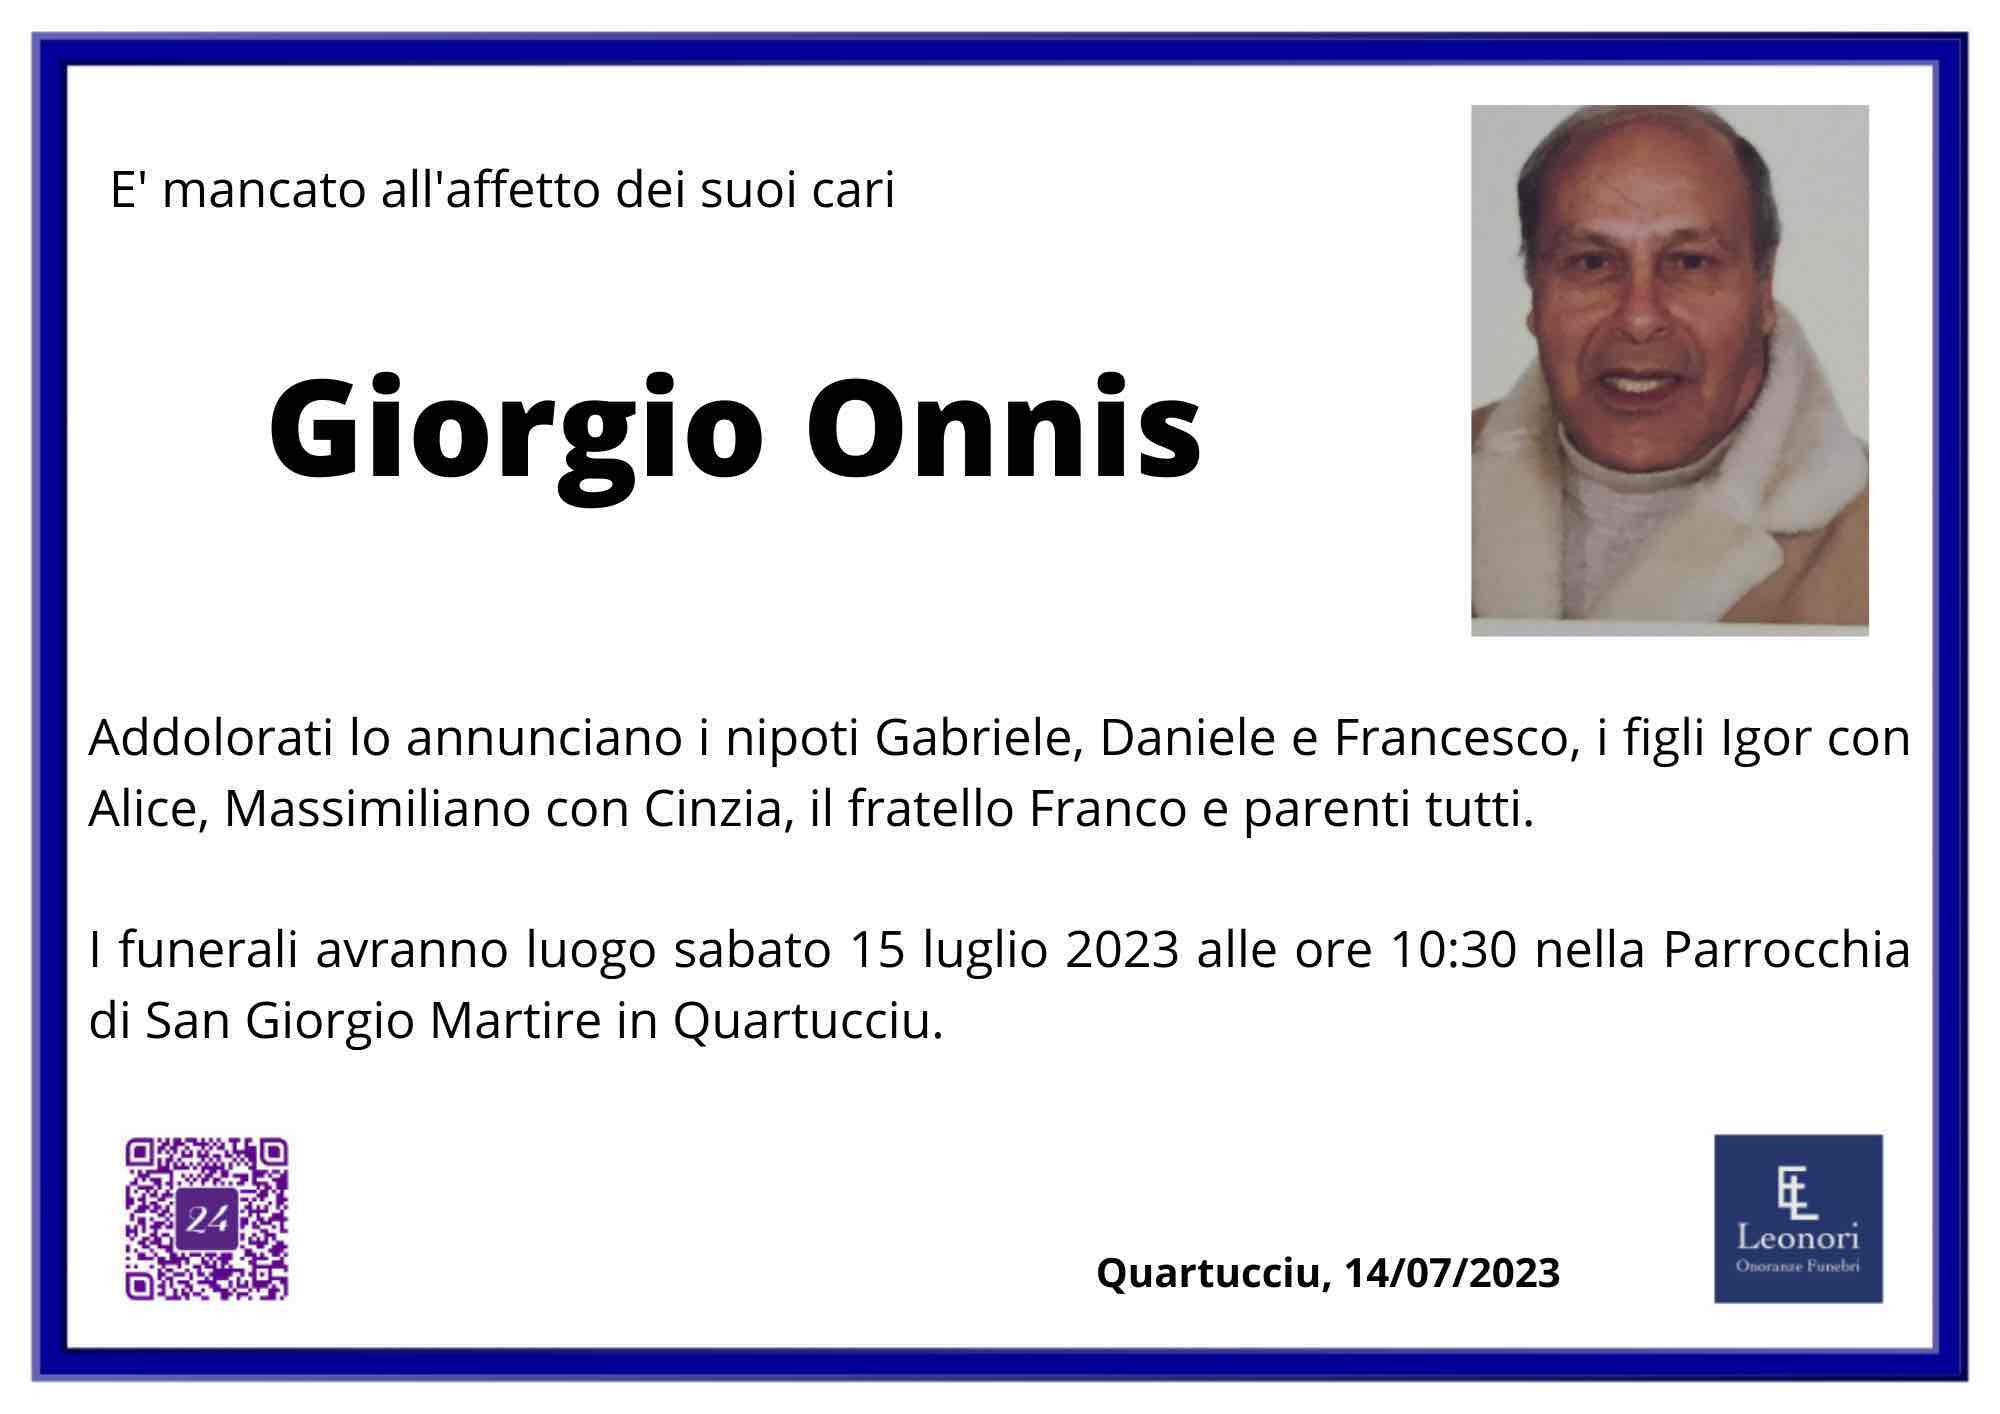 Giorgio Onnis